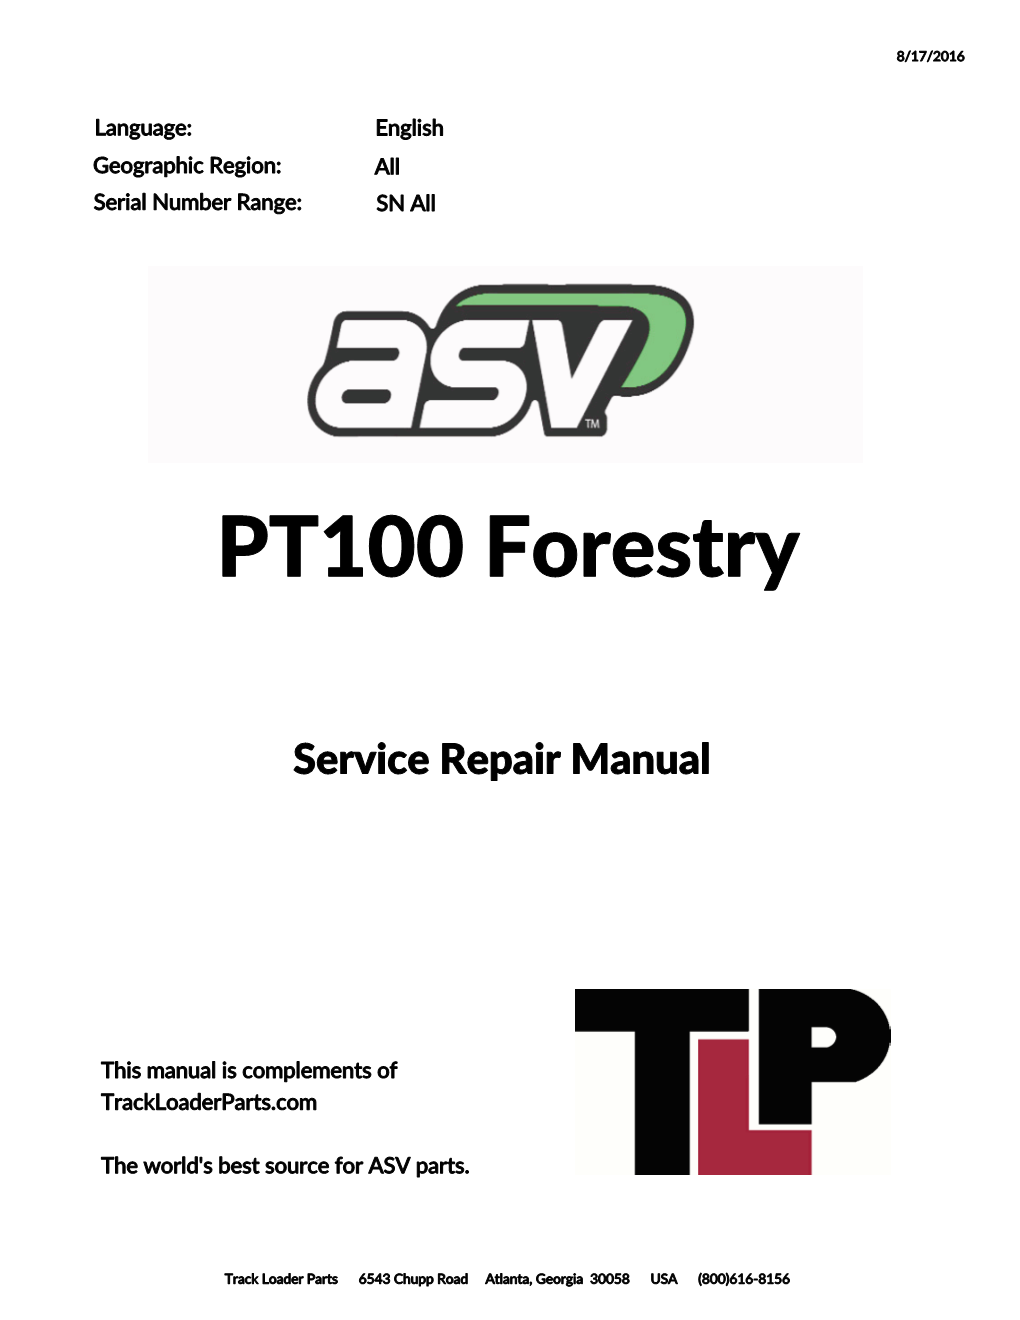 ASV PT100 Forestry Posi-Track Loader Service Repair Manual